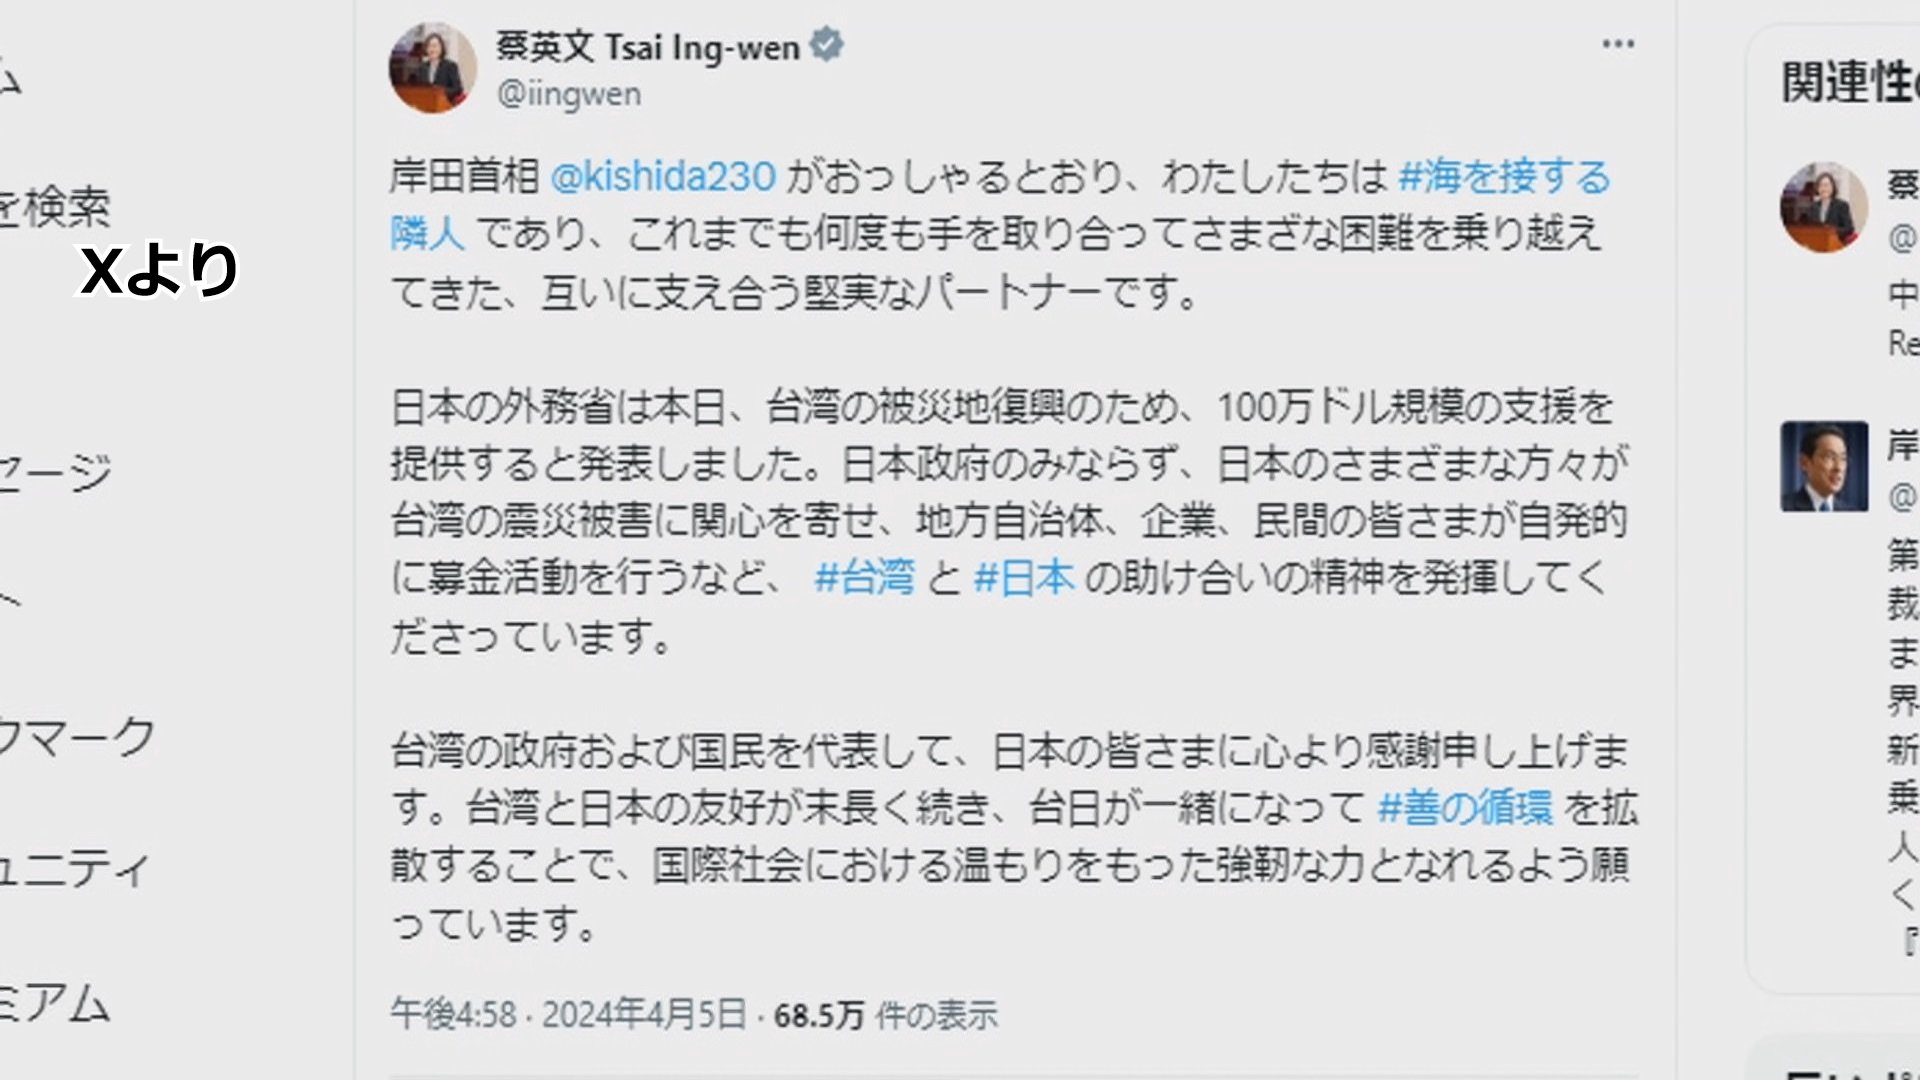 台湾　蔡英文総統「日本の皆さまに心より感謝」 支援実施の発表受け